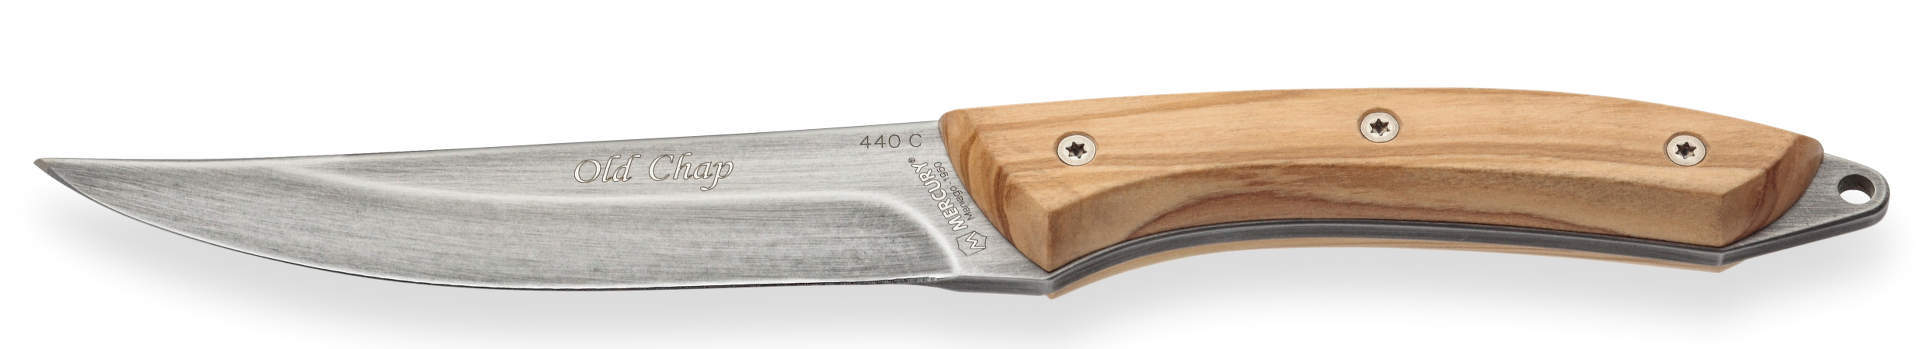 Нож с фиксированным клинком Mercury Old Chap, сталь 440C, оливковое дерево от Ножиков